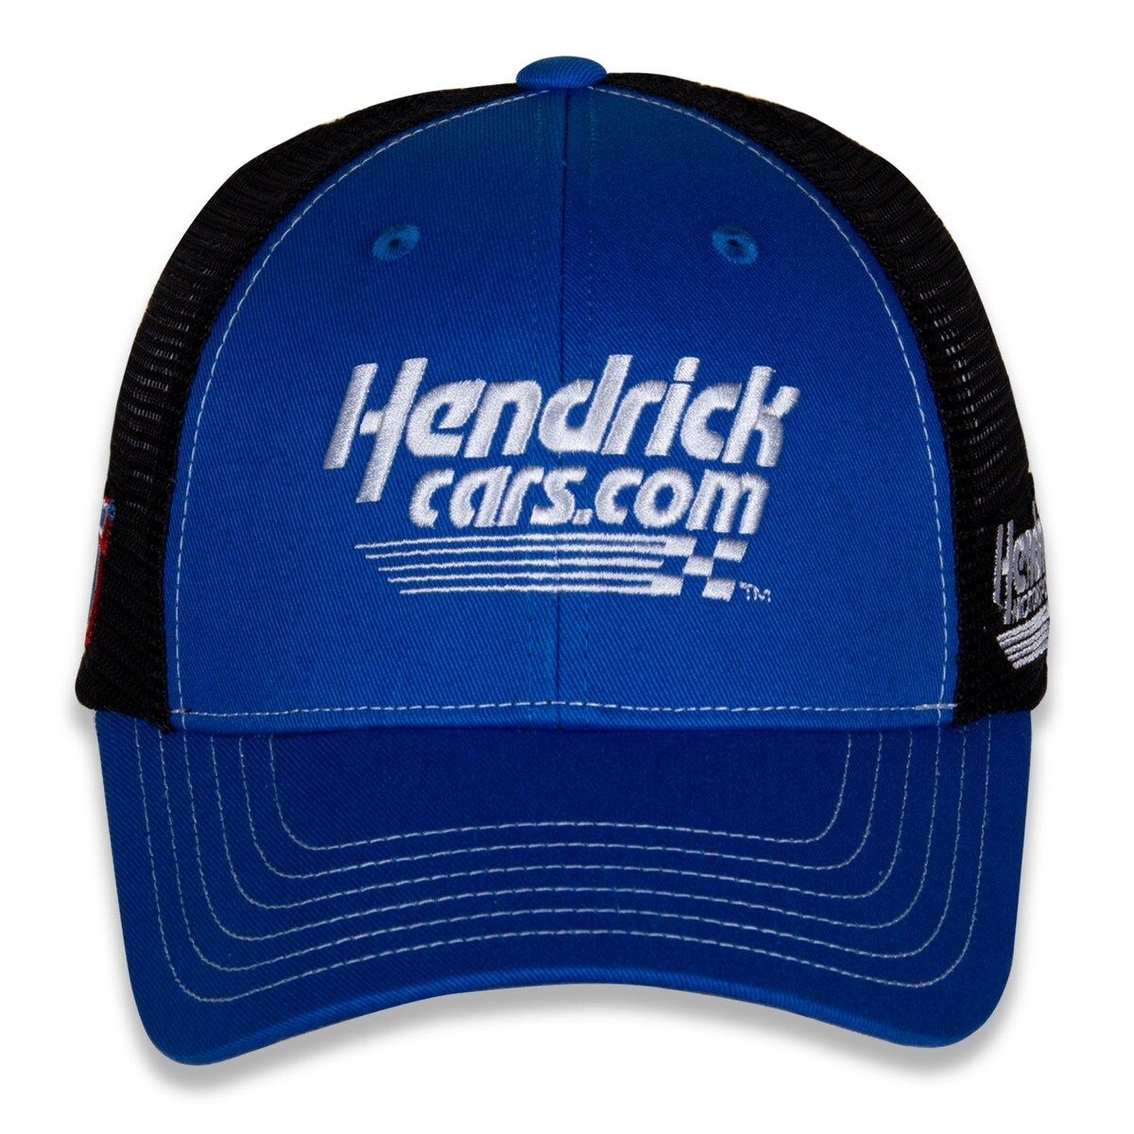 Hendrick Motorsports Team Collection Men's Royal/Black Kyle Larson Team Sponsor Adjustable Hat - Image 3 of 4